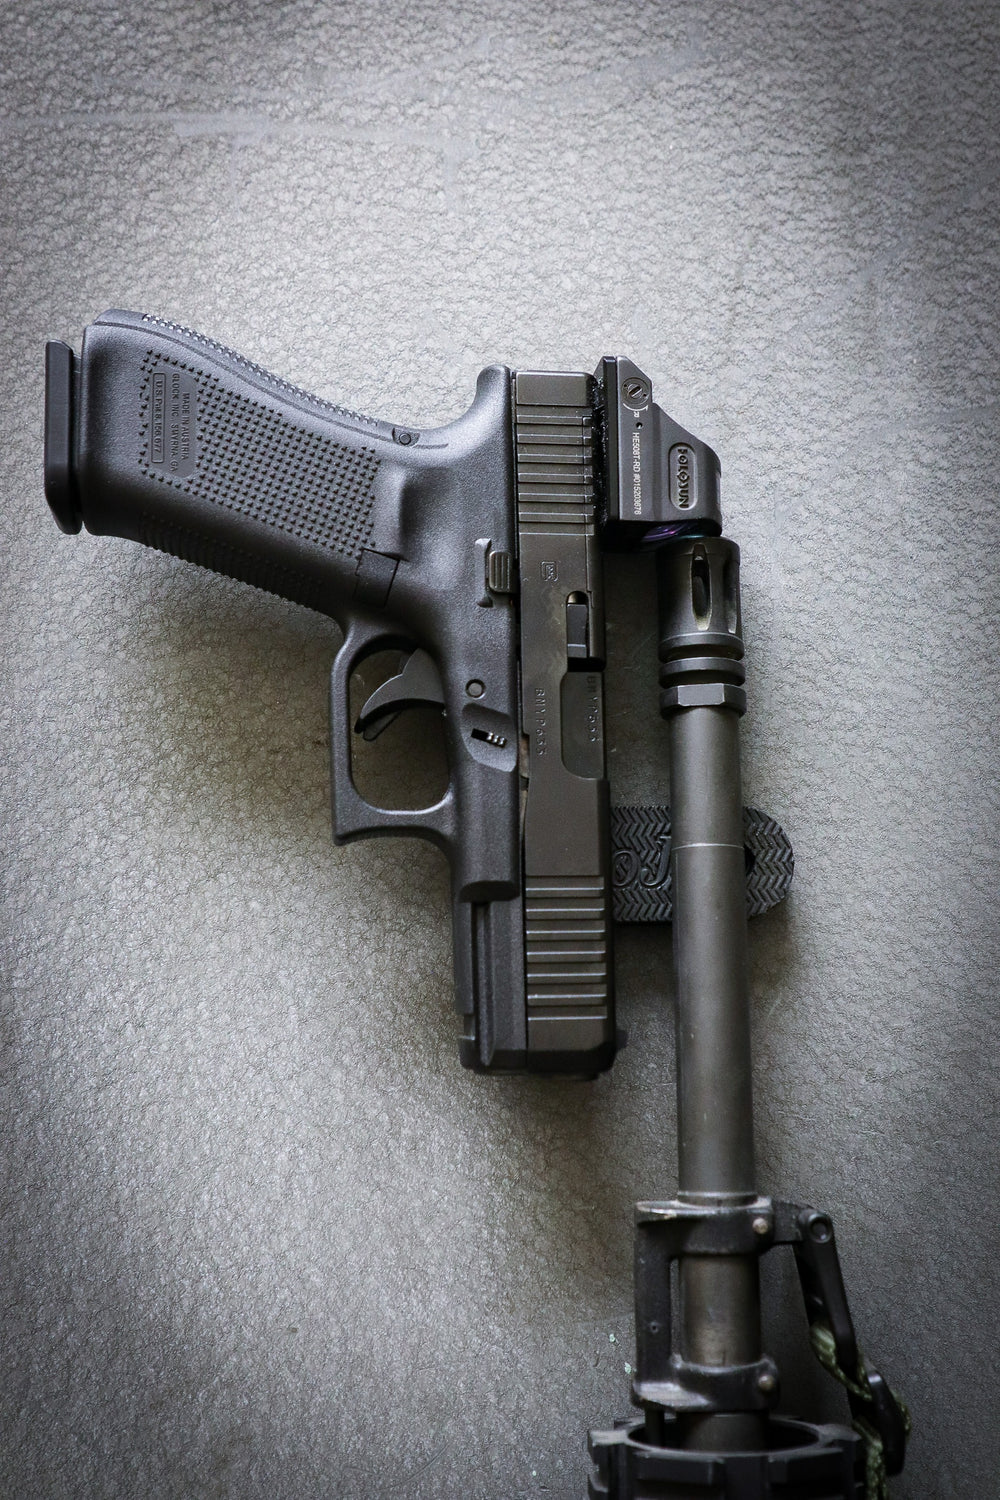 Pistol and a AR rifle held by a gun gripper gun magnet on a safe door